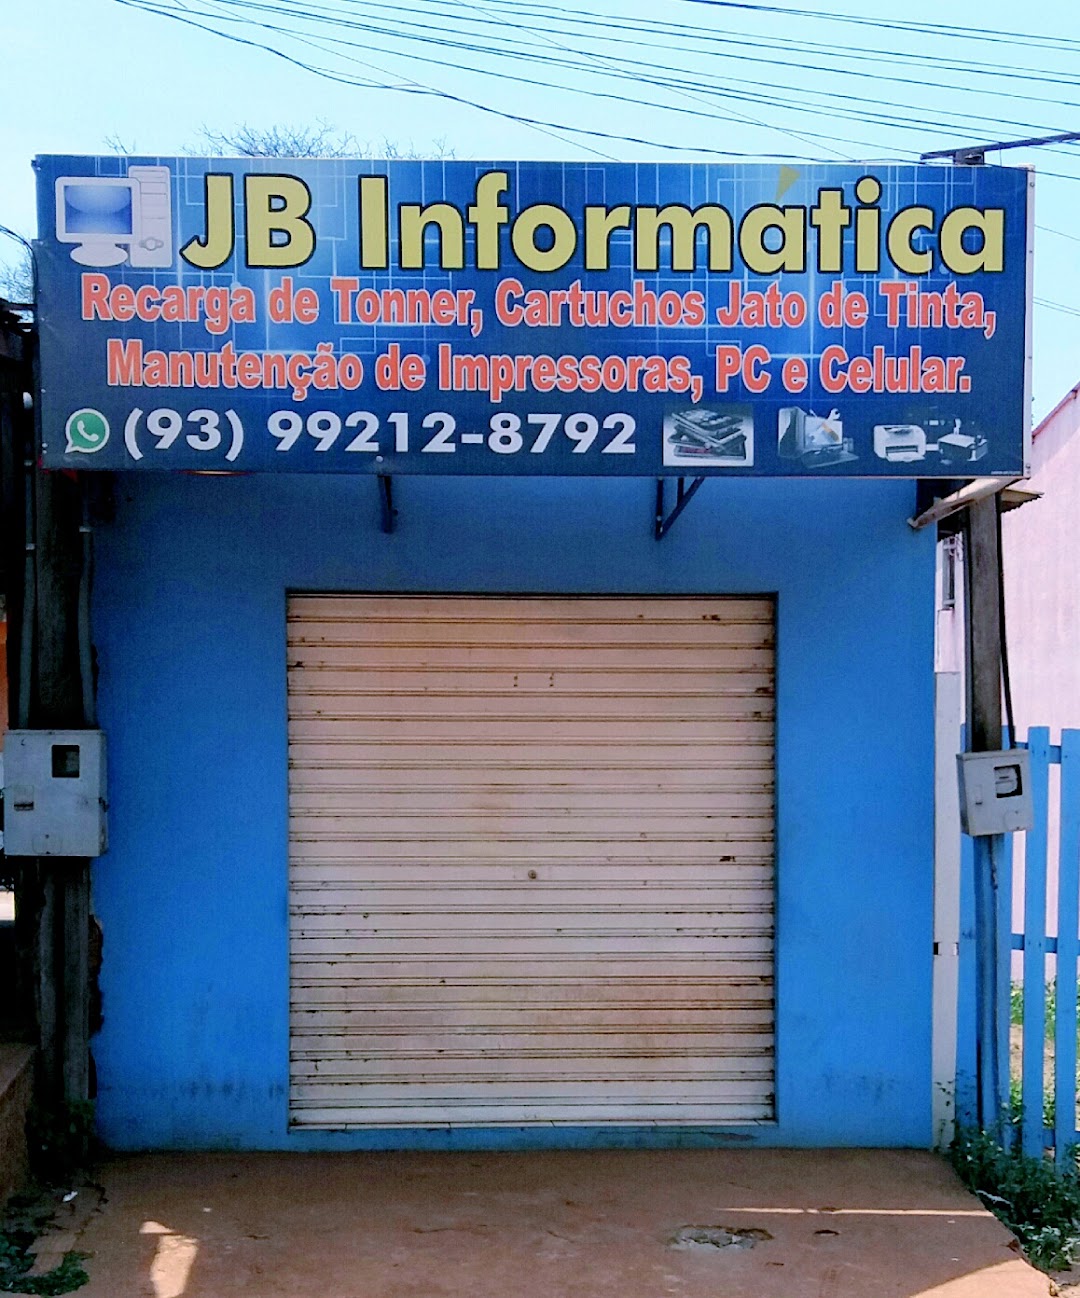 JB INFORMÁTICA